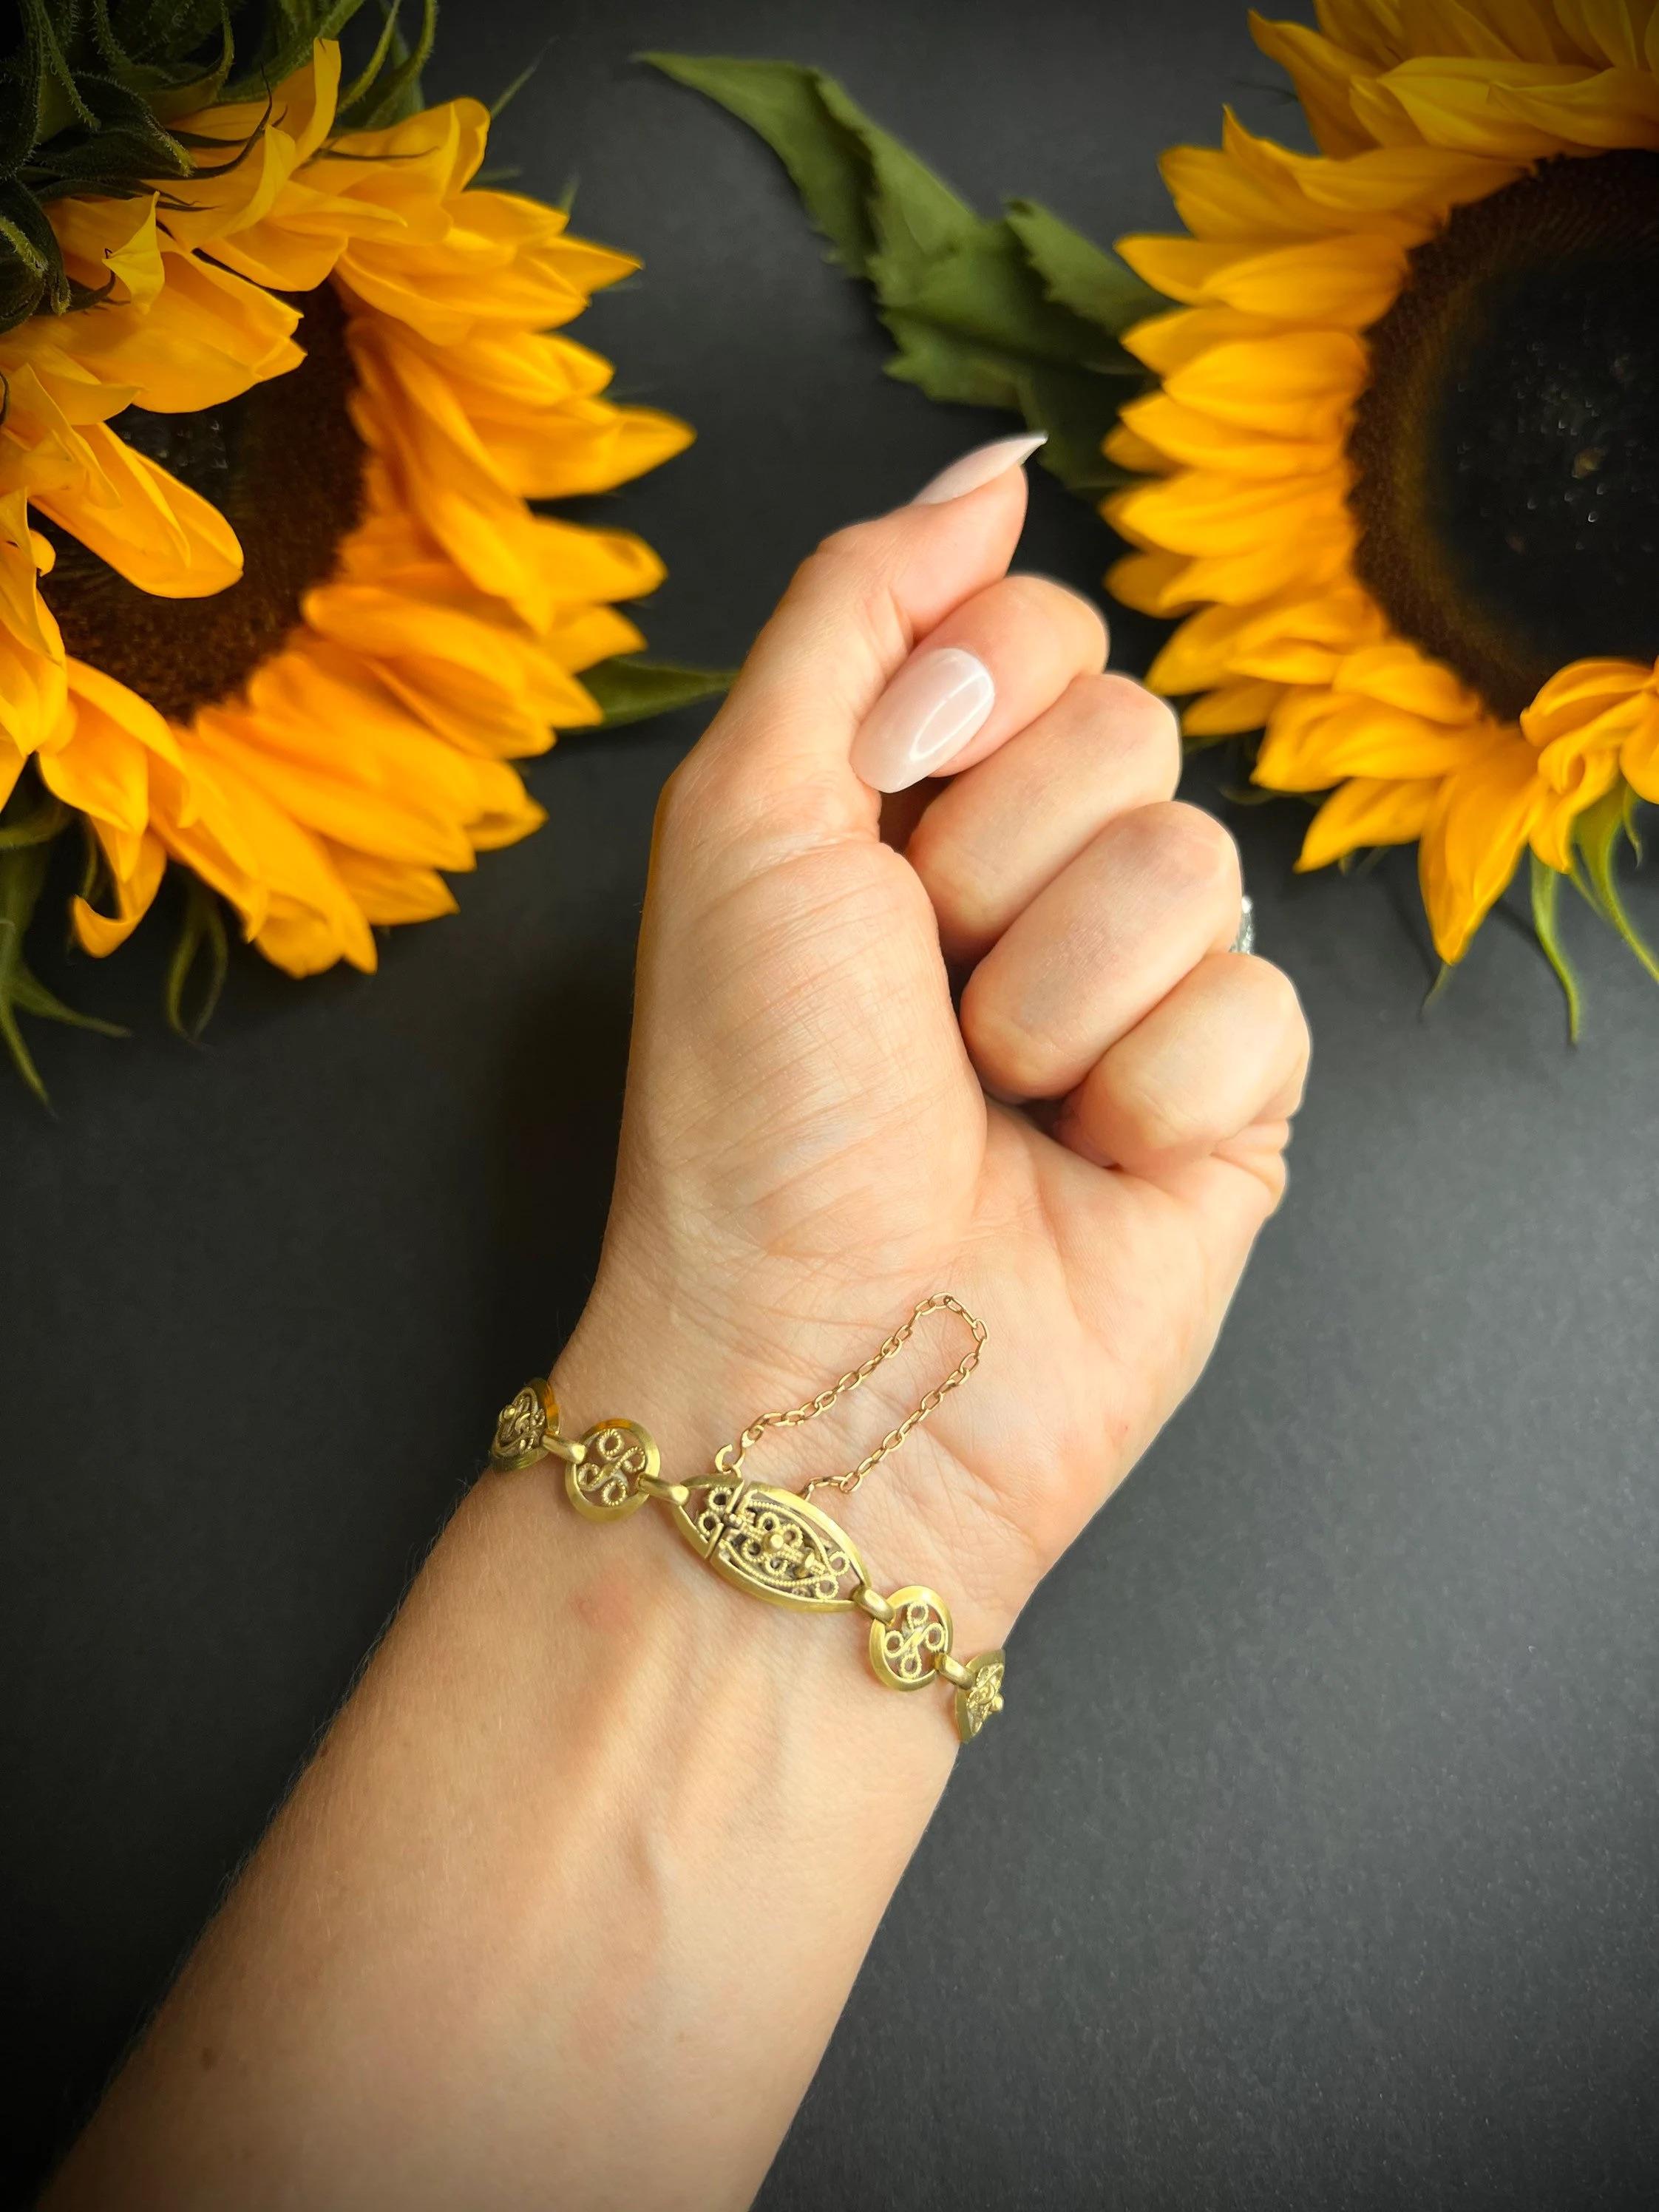 Bracelet en or antique 

Or 18 carats 

Poinçon français Circa 1920
Fabuleux bracelet en or français. Magnifiques maillons ovales et ronds avec les plus jolis détails en filigrane. 

Fermoir intégré - Poinçon de la tête d'aigle française sur la